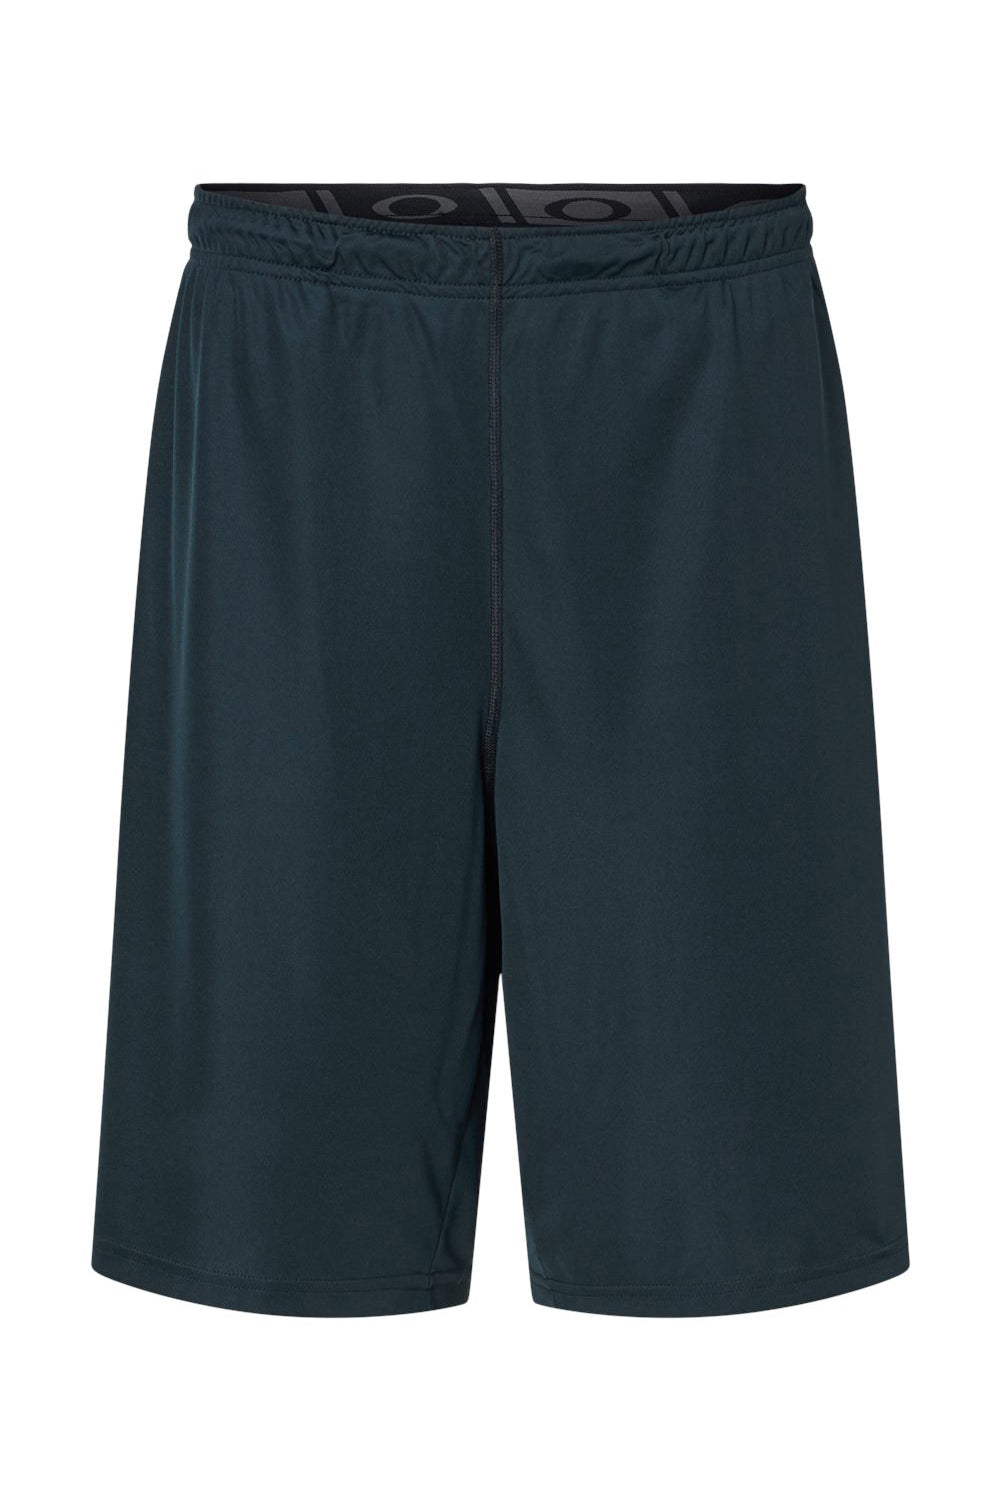 Oakley FOA402995 Mens Team Issue Hydrolix Shorts w/ Pockets Blackout Flat Front